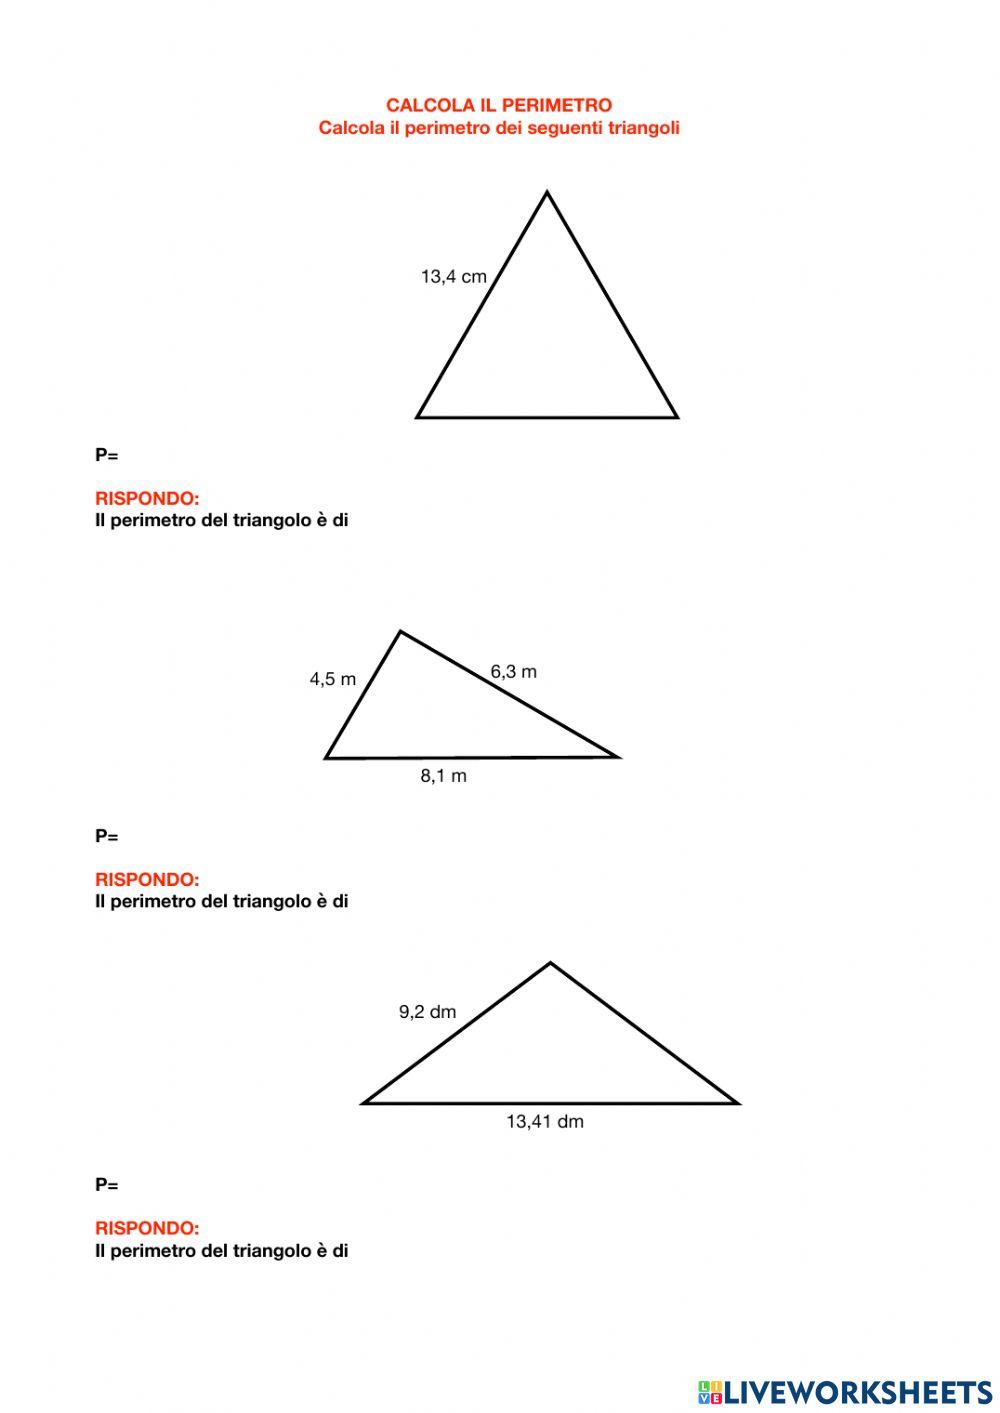 Perimetro dei triangoli